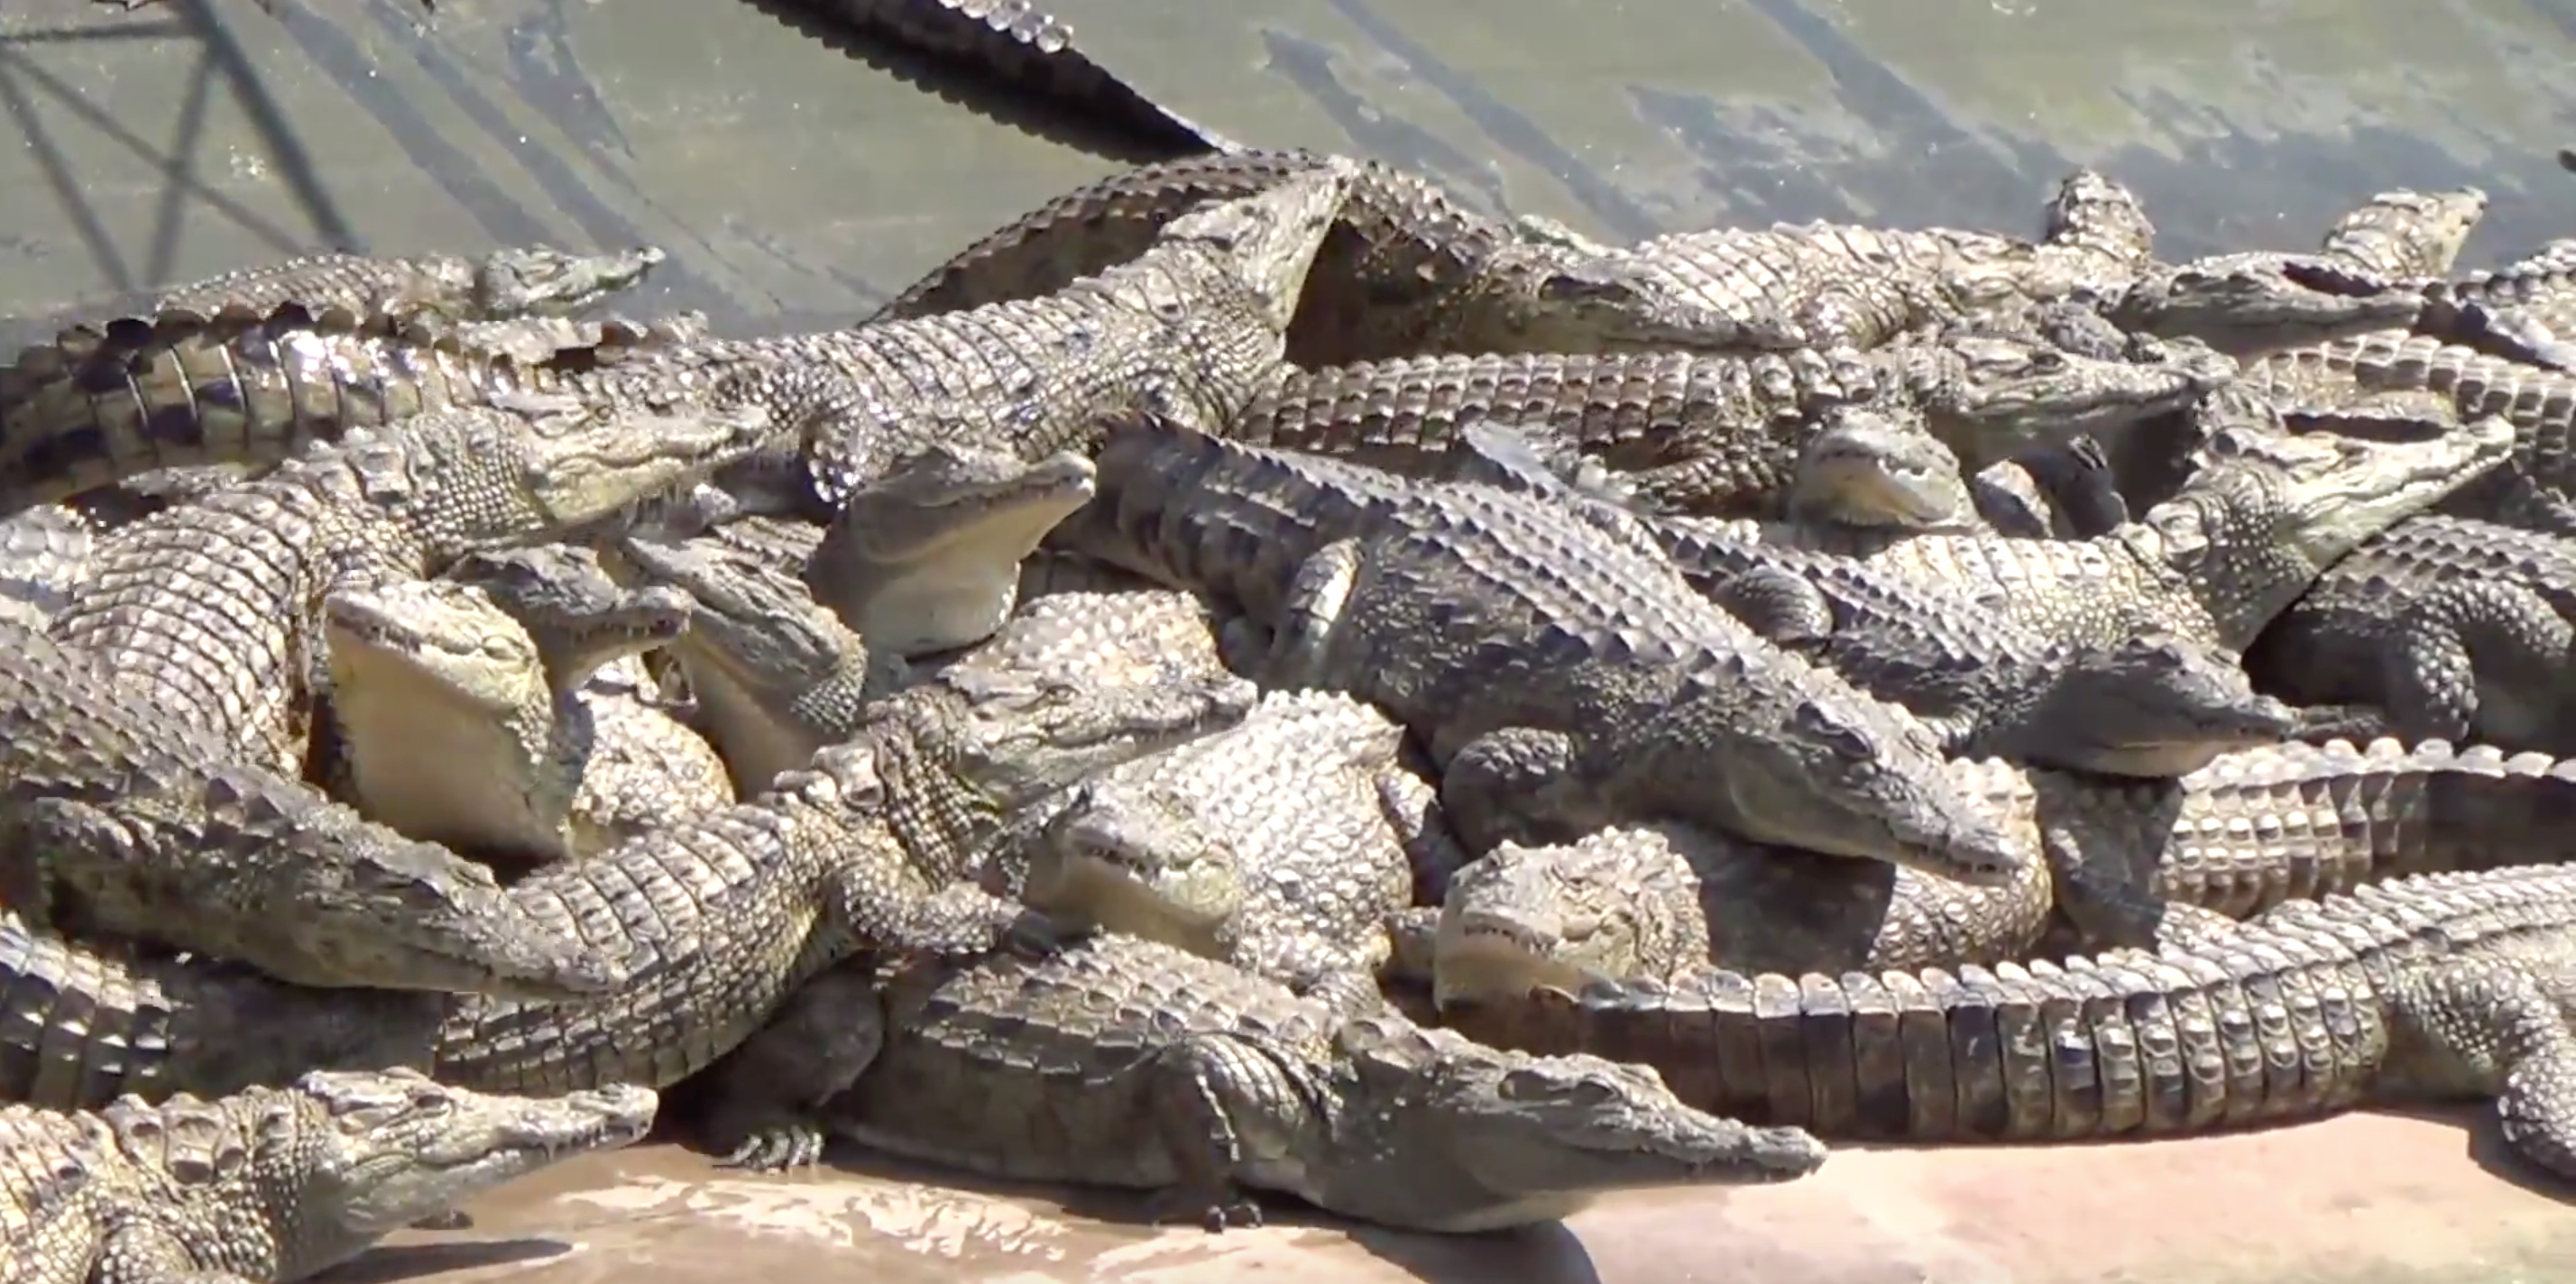 Undercover Investigators Expose Atrocities on Alligator Farms that ...